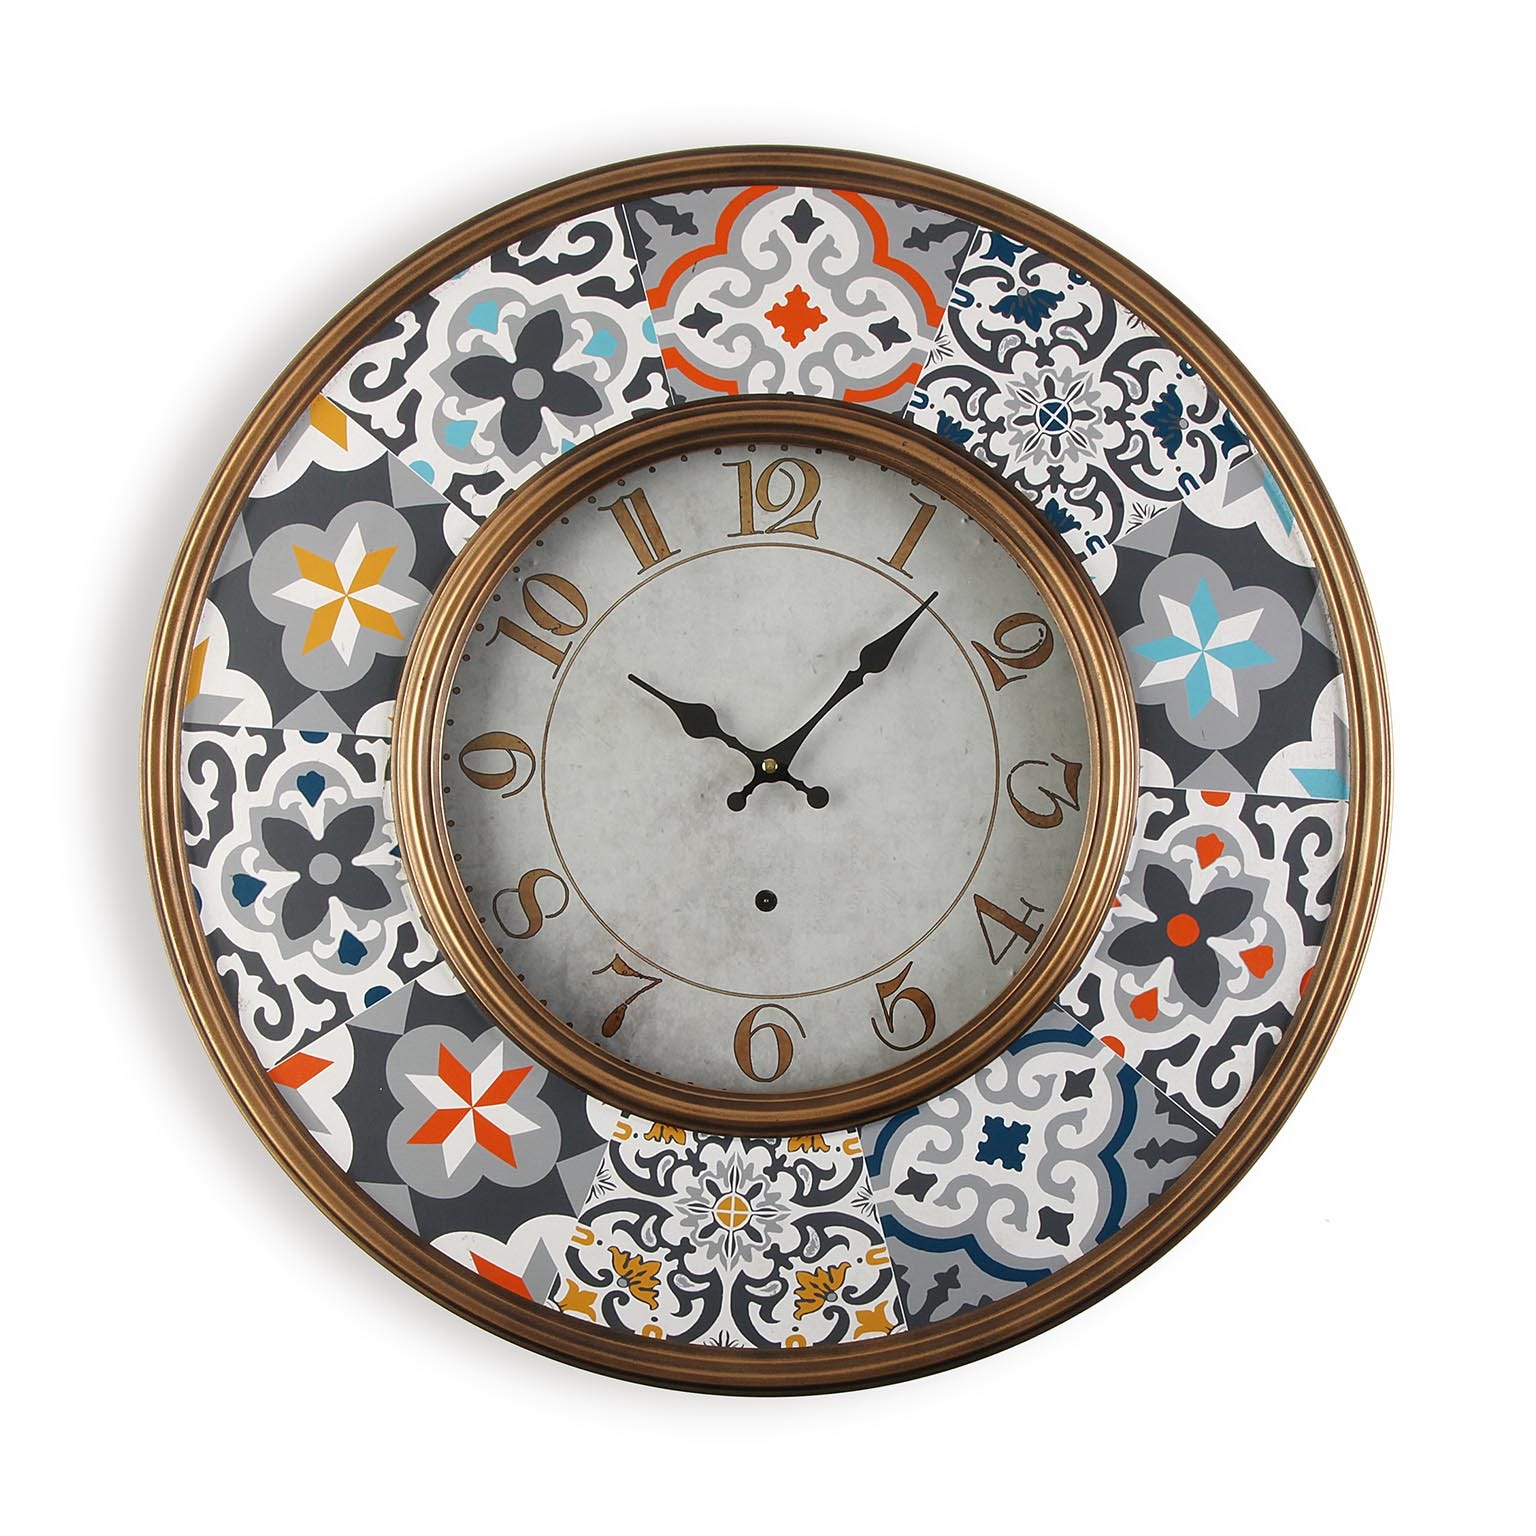 Versa Edsom Reloj de Pared Decorativo para la Cocina, el Salón, el